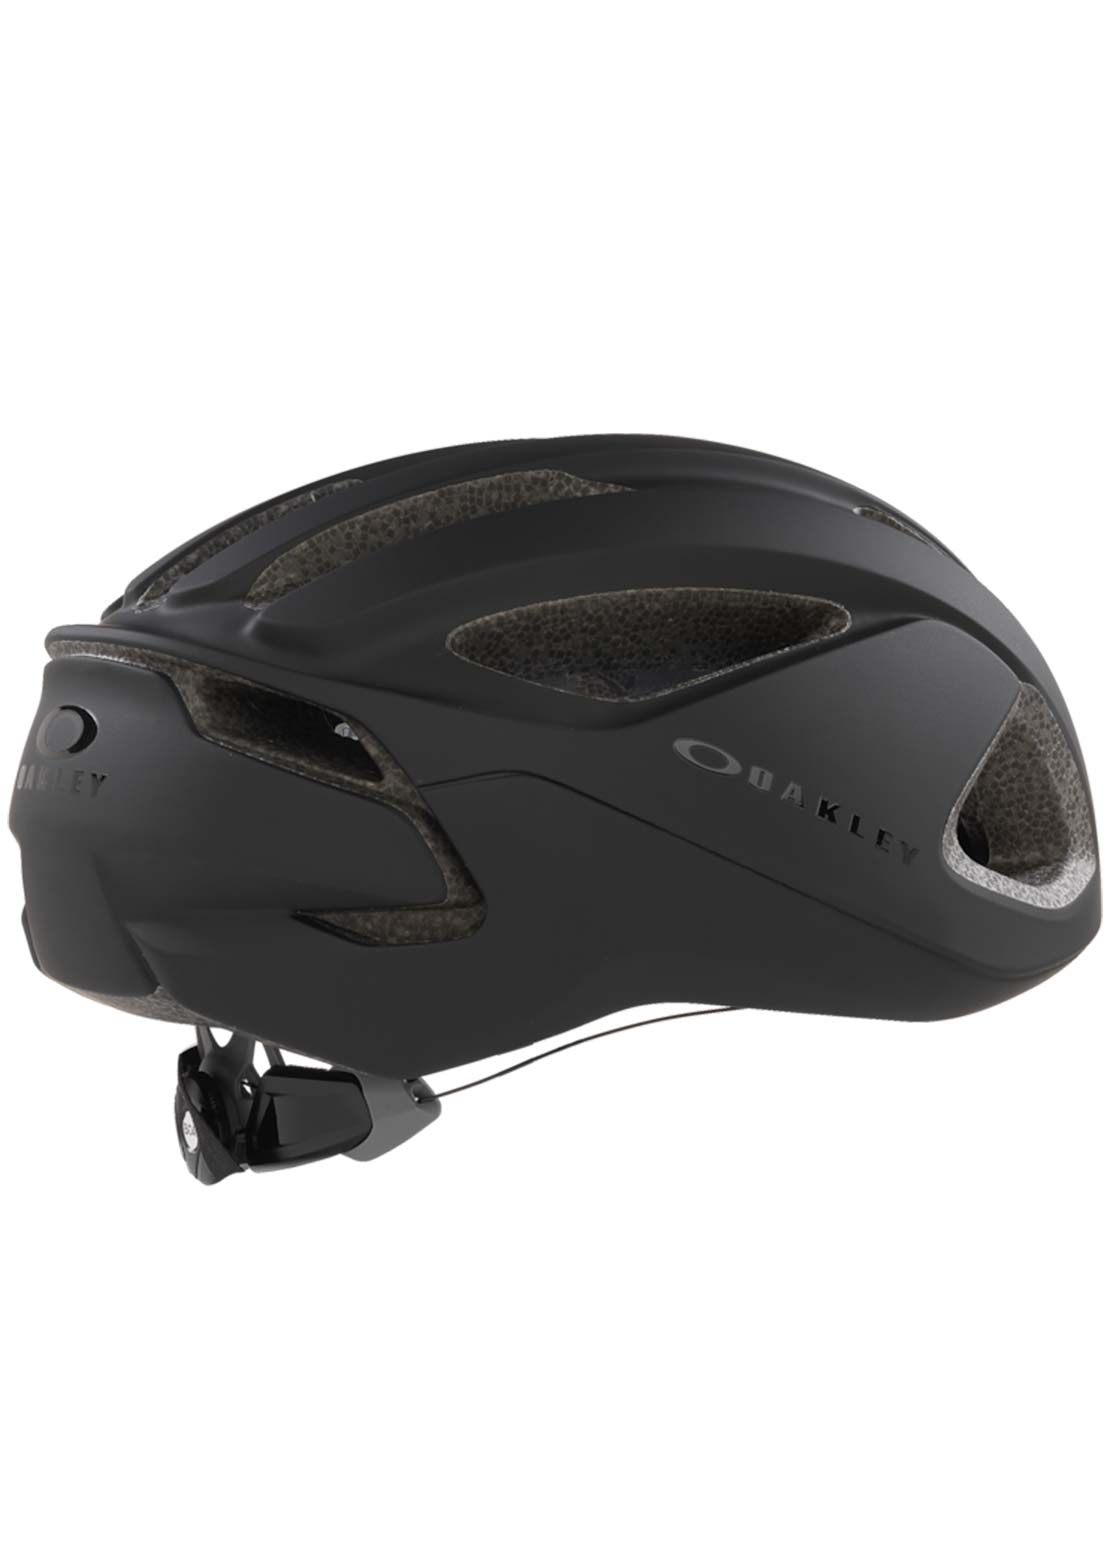 Oakley ARO 3 Lite Mountain Bike Helmet Blackout